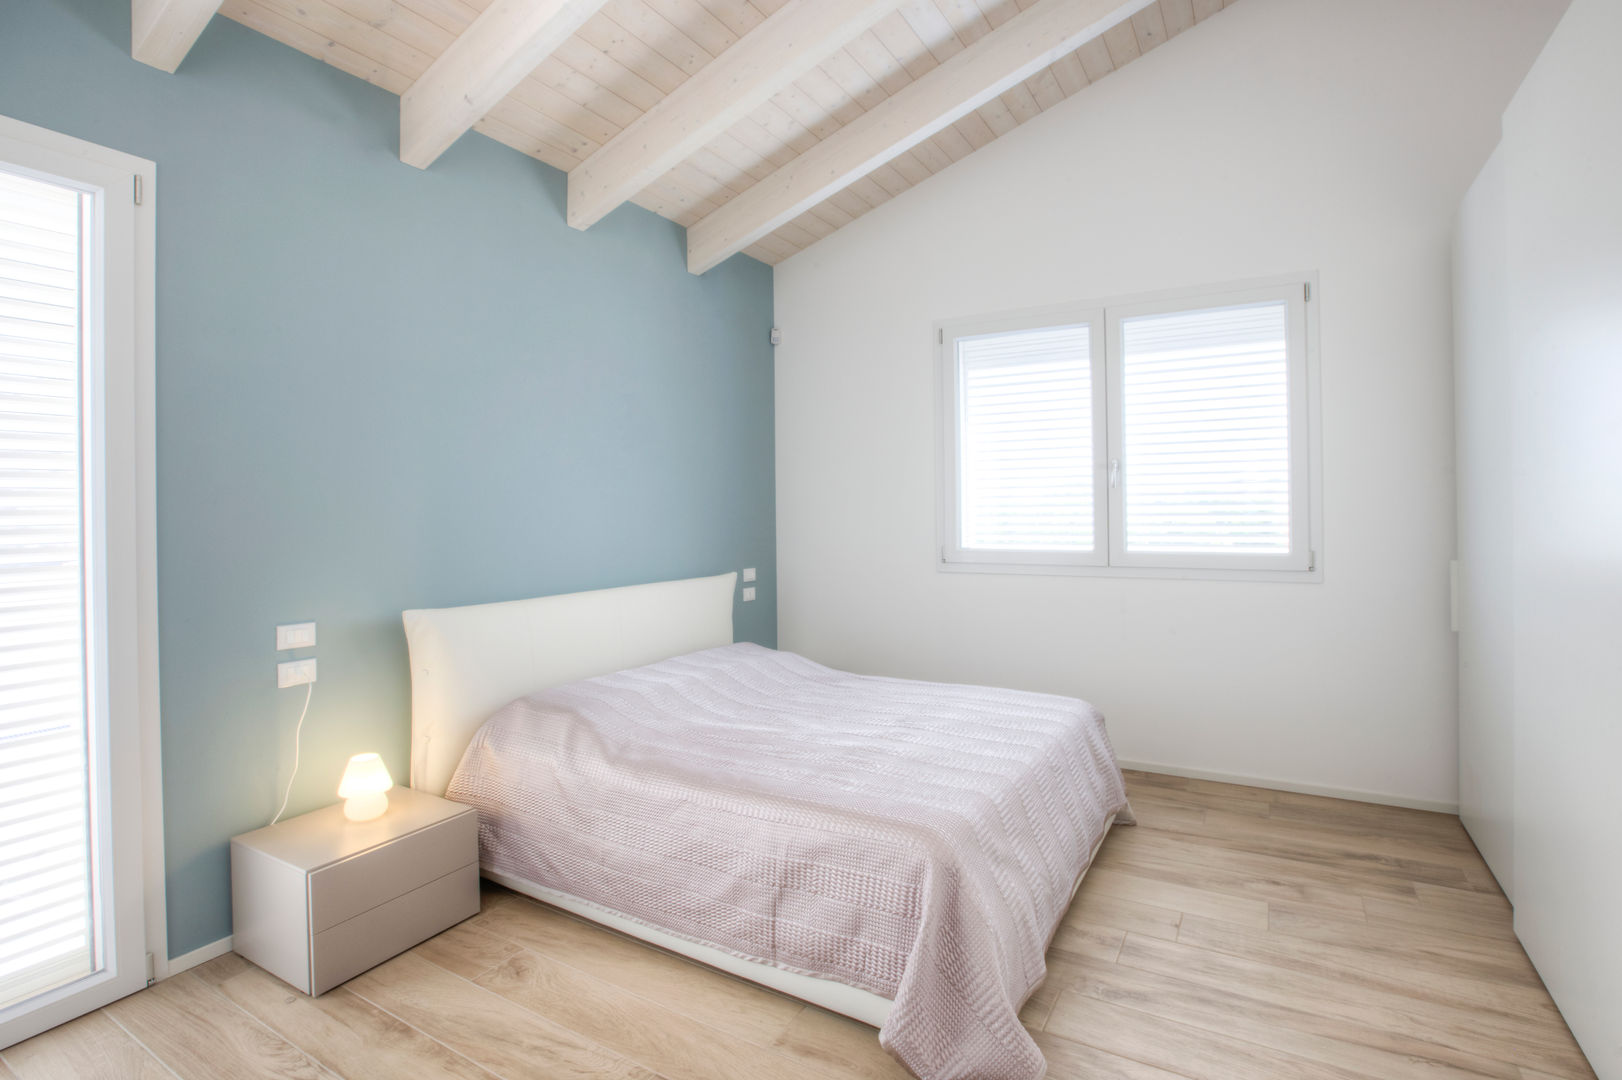 Casa in legno Villa Conti, Progettolegno srl Progettolegno srl Modern Bedroom Wood Wood effect